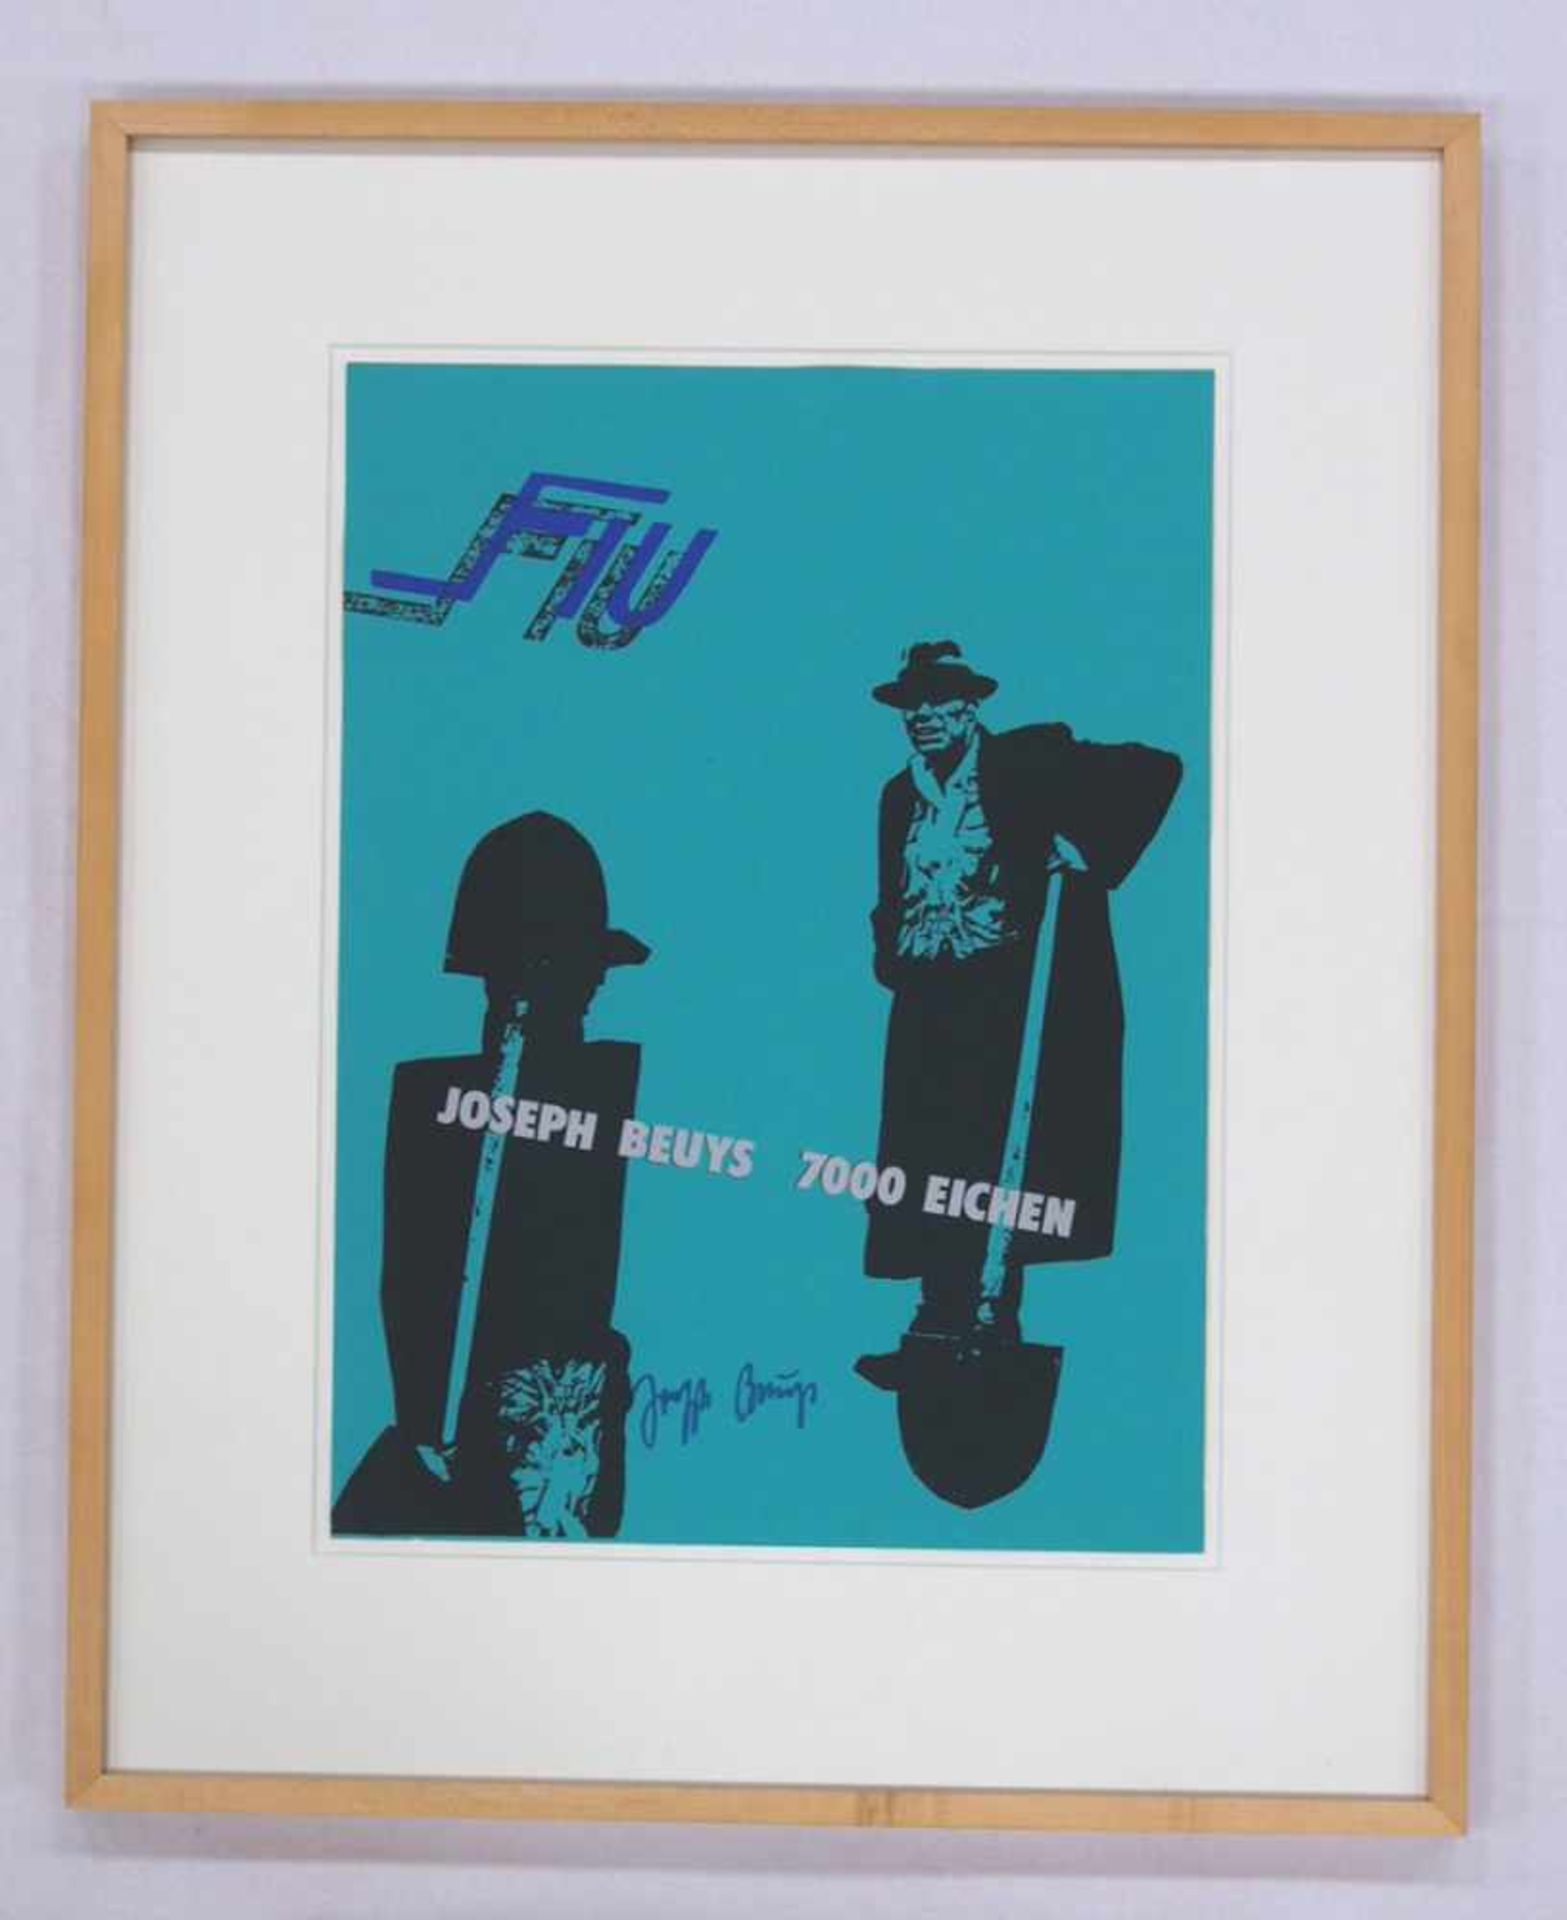 BEUYS, Joseph1921-1986FIU - Joseph Beuys 7000 Eichen1982, Siebdruck, signiert, 61 x 43 cm, gerahmt - Bild 2 aus 2